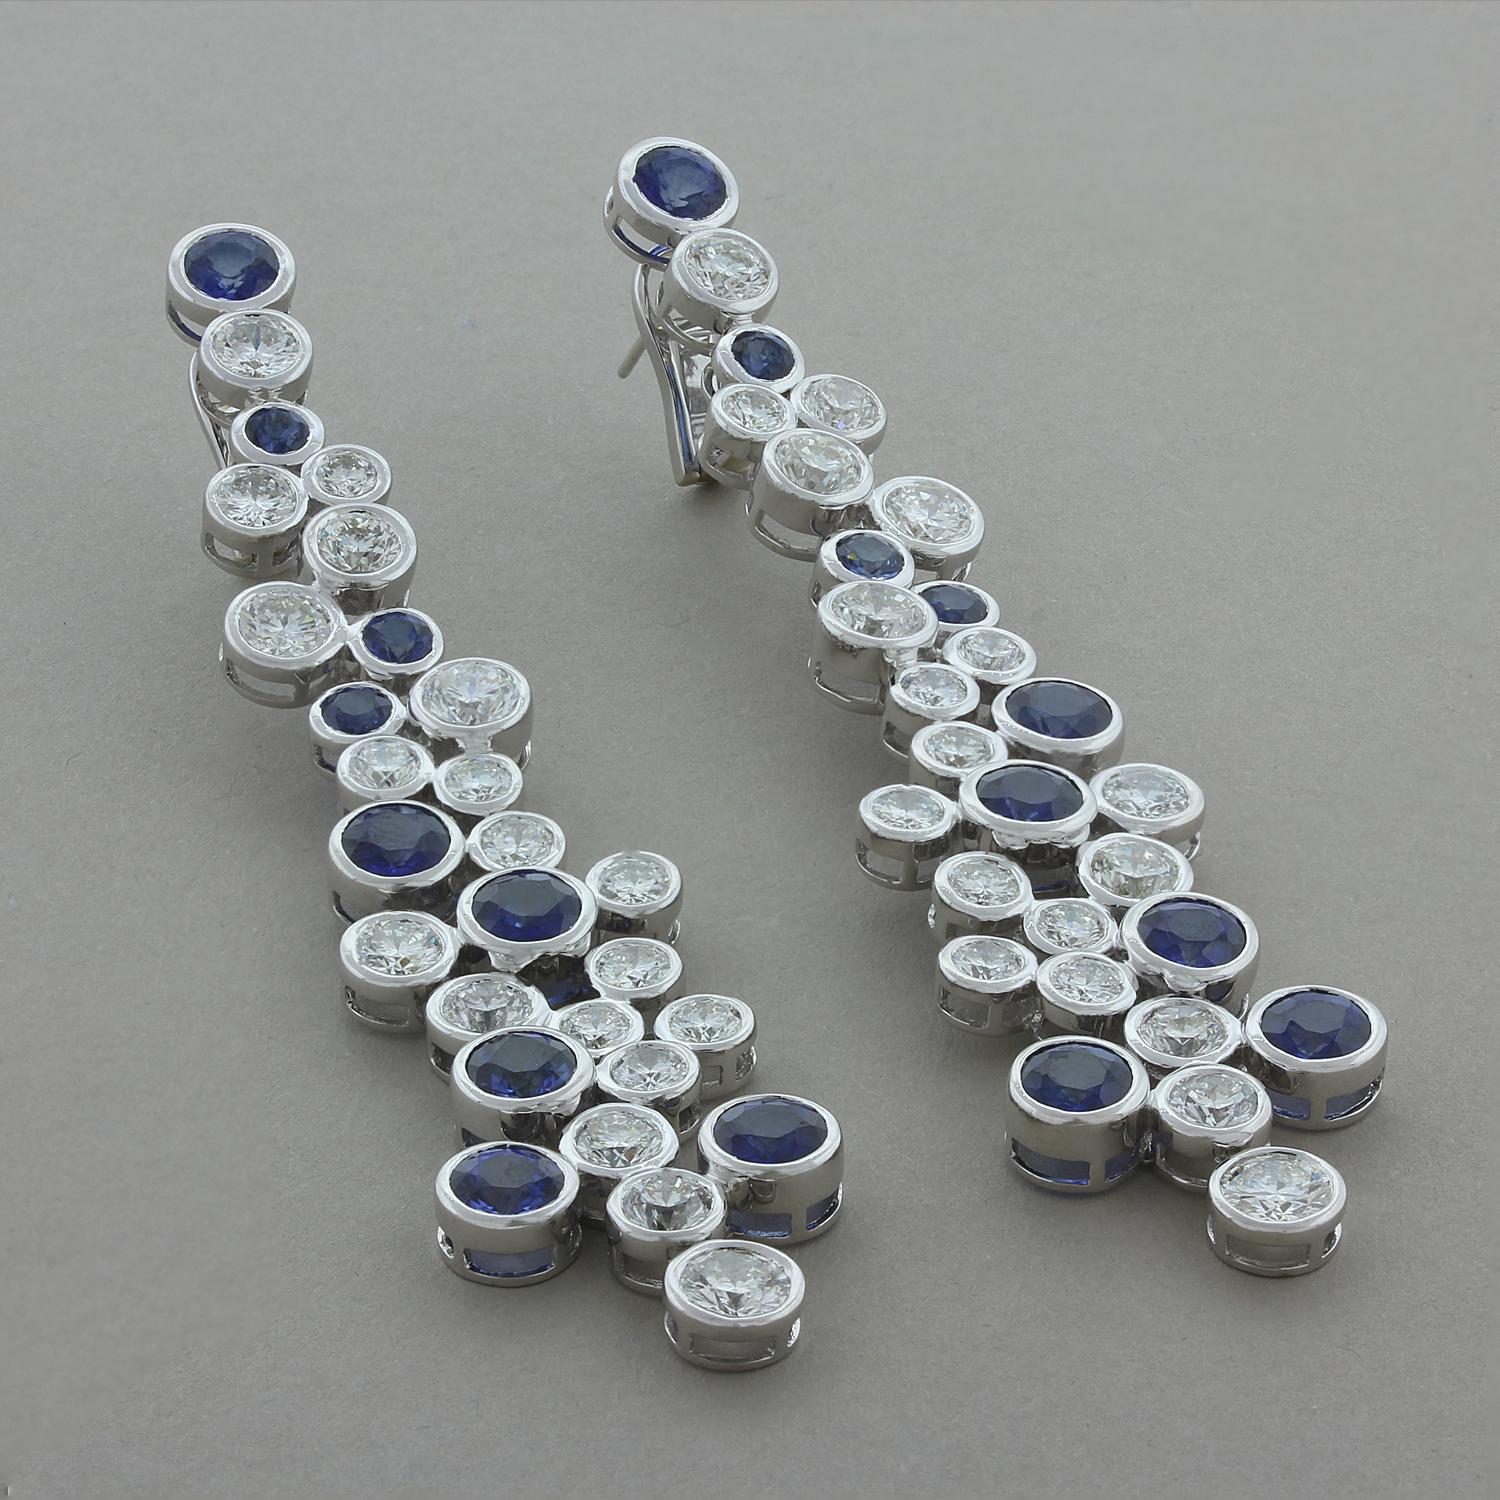 Diese modernen, langen Ohrringe bestehen aus 15,90 Karat runden blauen Saphiren, die von 17,60 Karat funkelnden farblosen Diamanten begleitet werden. Die Lünettenfassung aus 18 Karat Weißgold verleiht diesem Paar flexibler Ohrringe einen klassischen